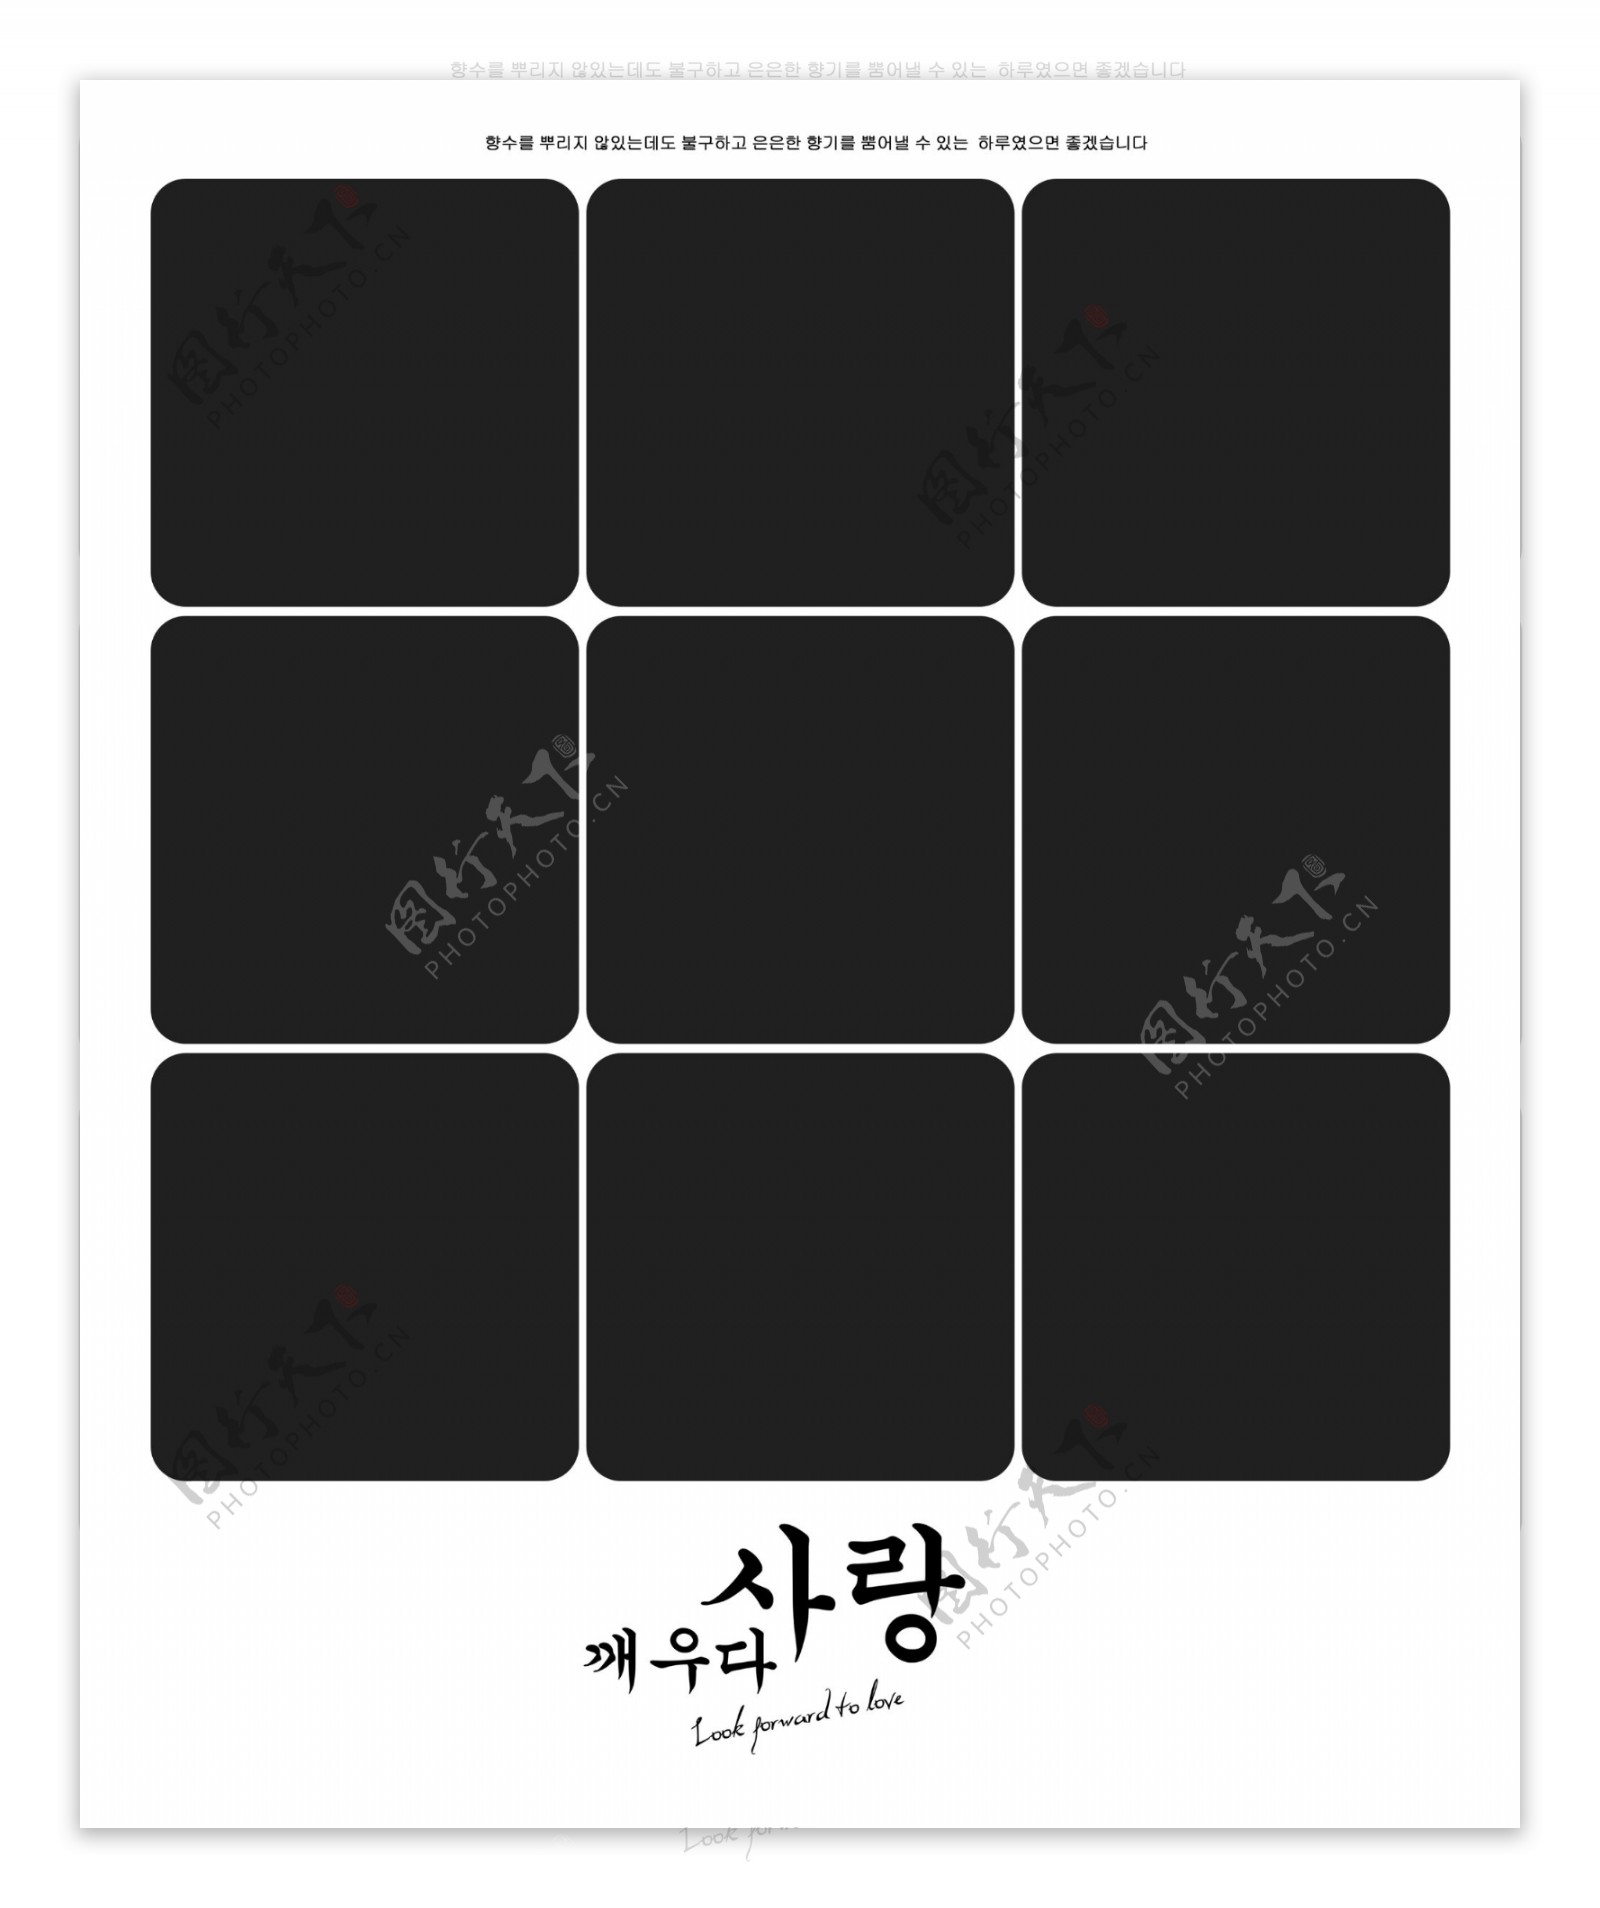 韩式九宫格摄影模板